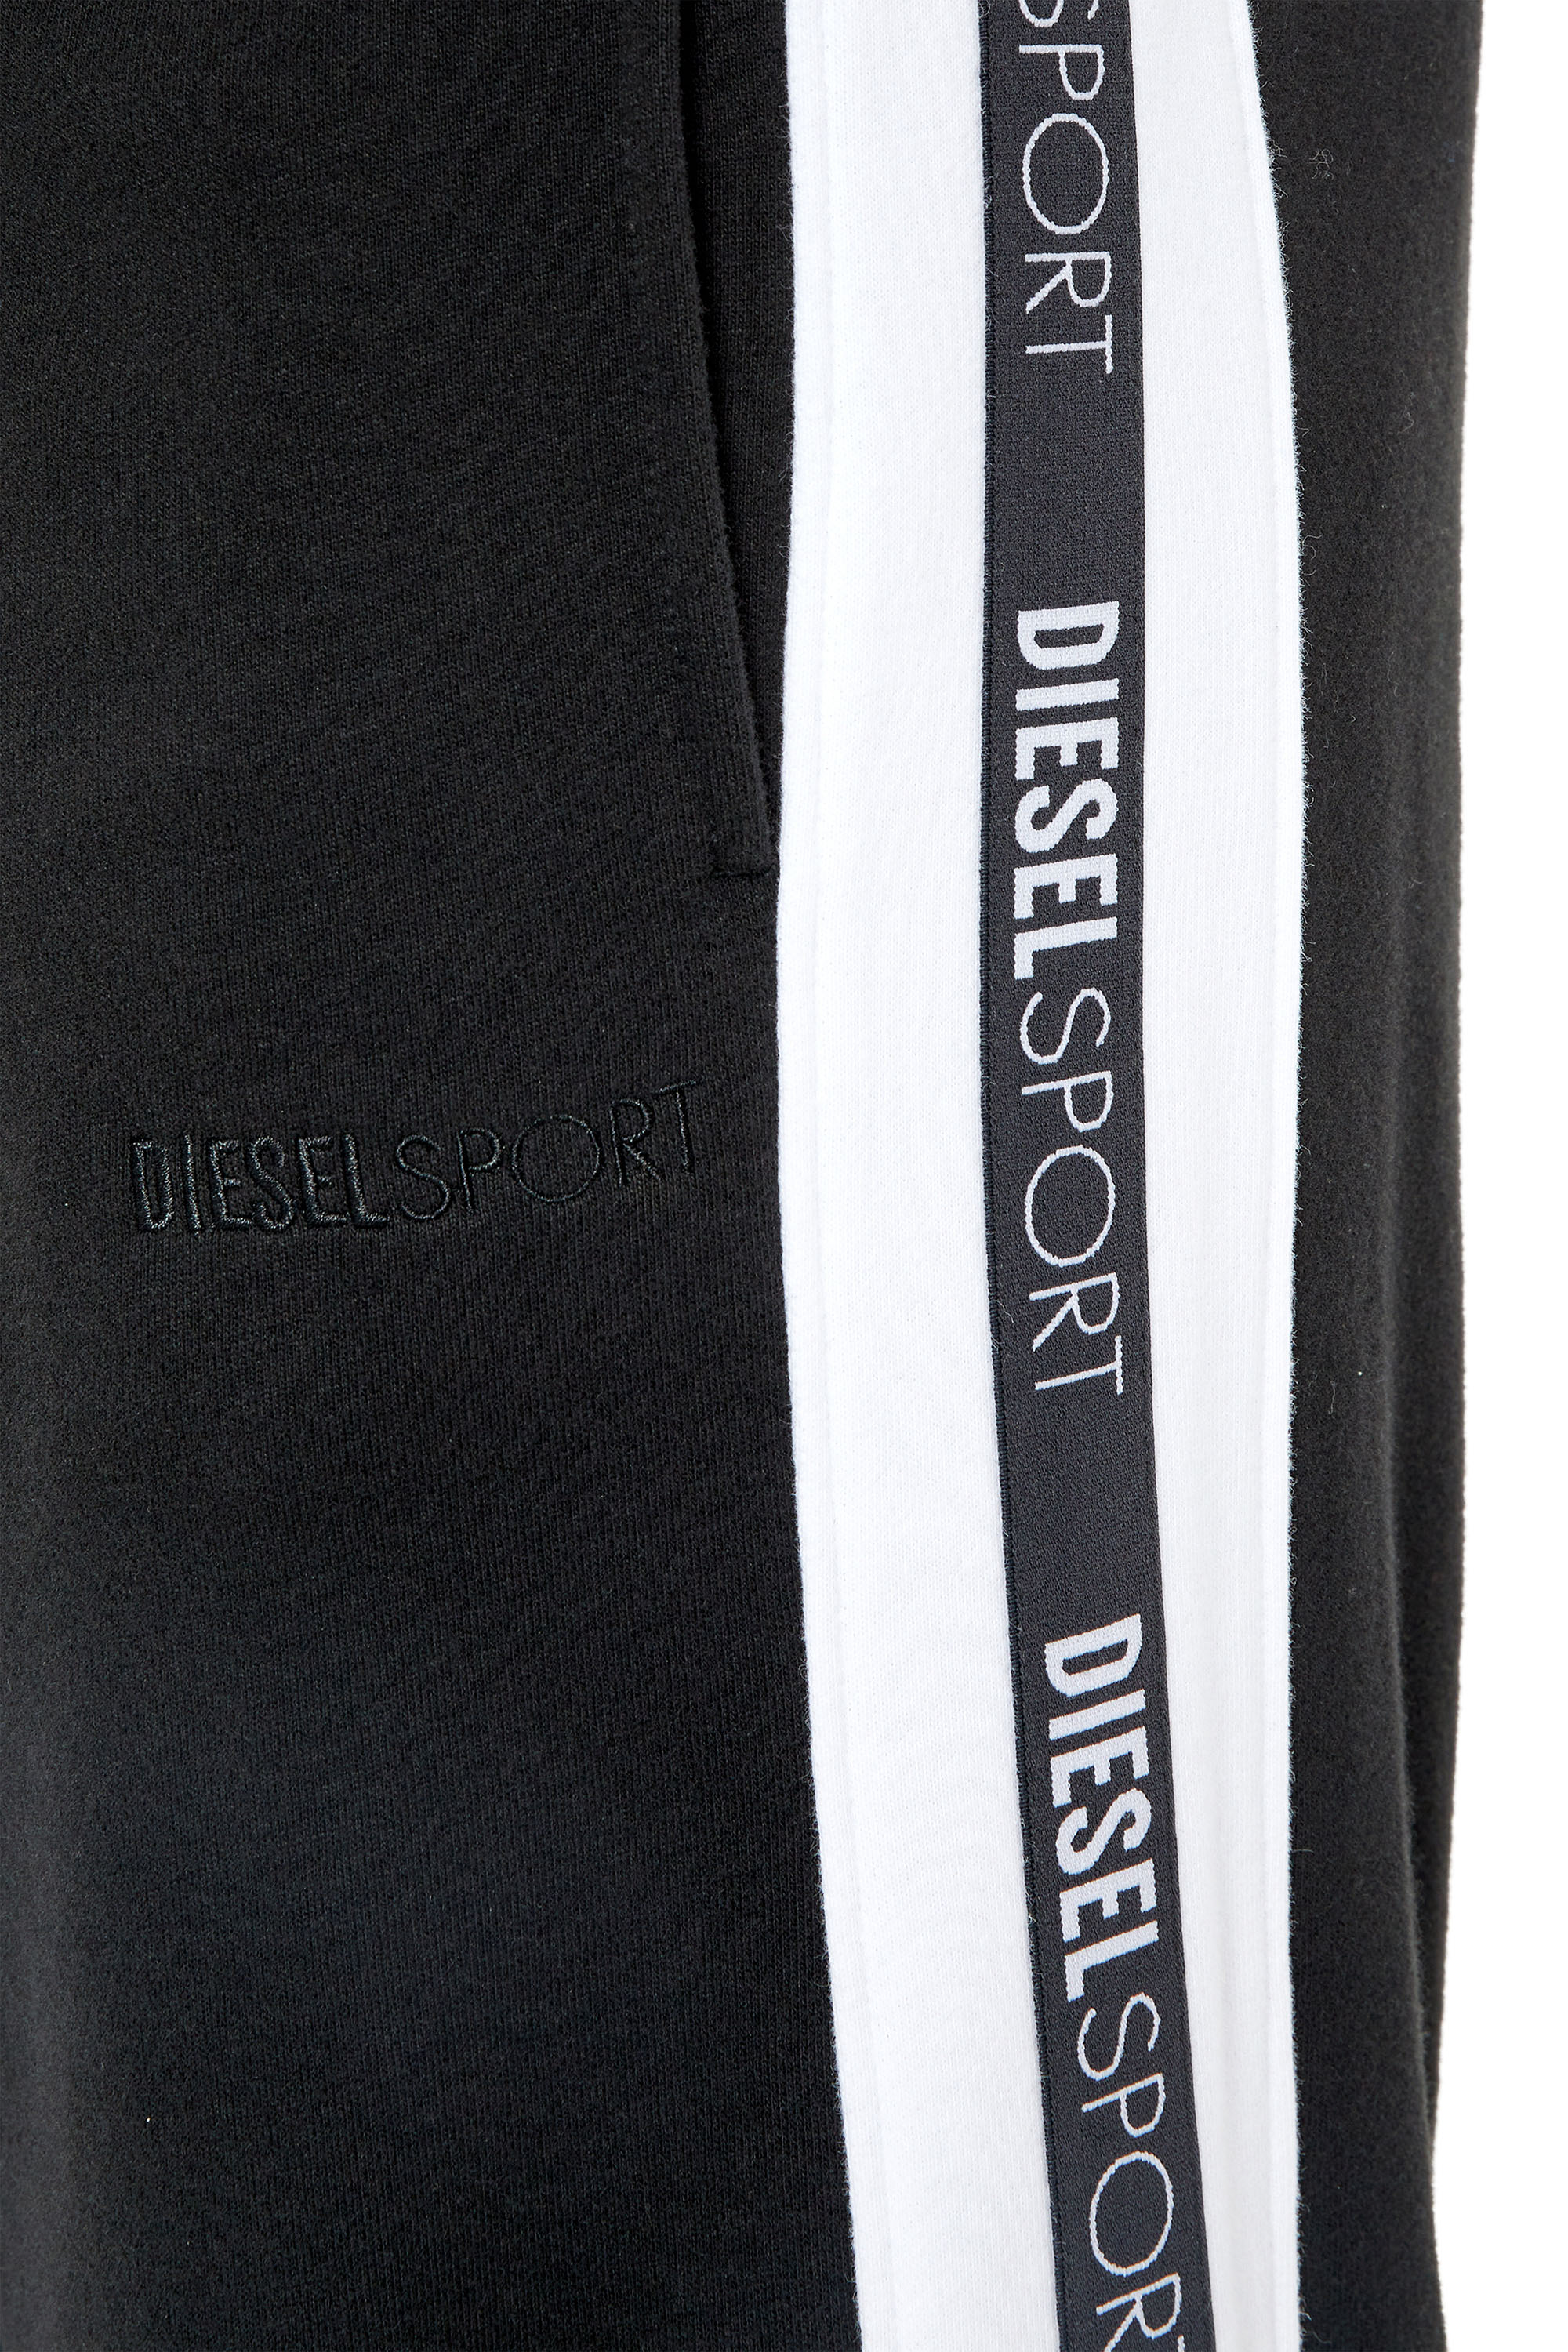 Diesel - AMSB-JAGER-HT33, Black - Image 5